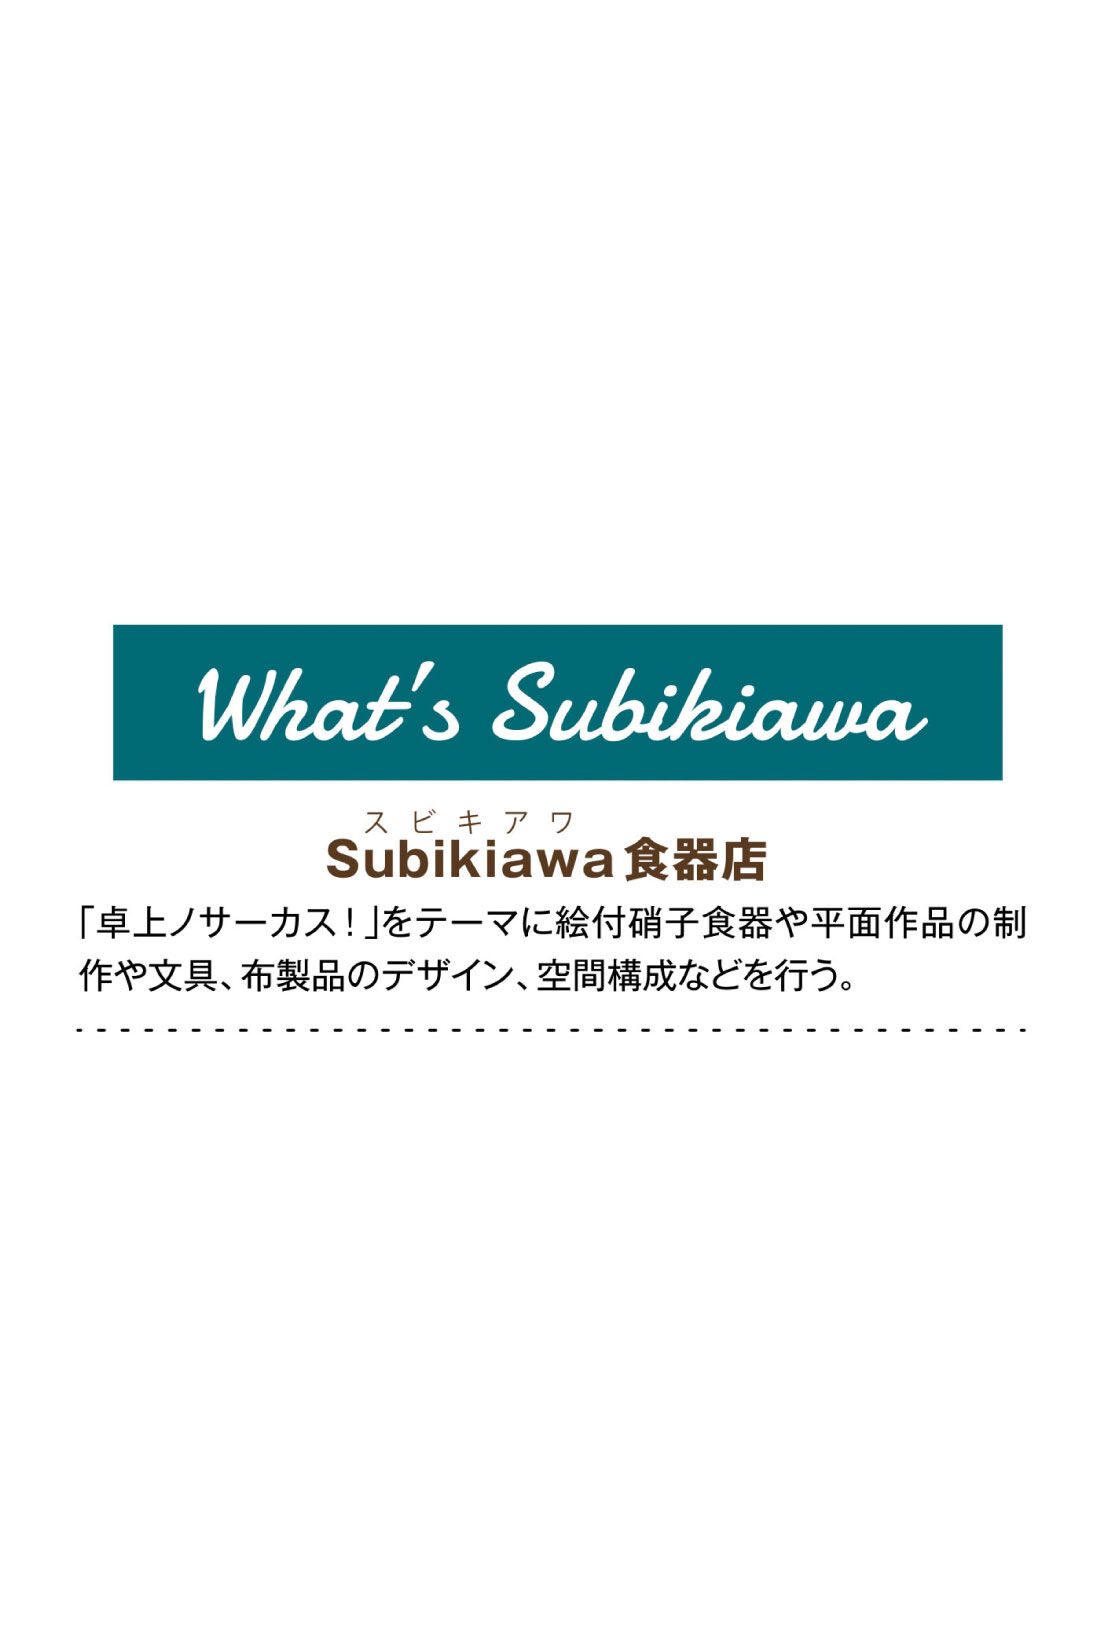 フェリシモMama|Subikiawa食器店さんとつくった クリームソーダ柄のトートバッグ